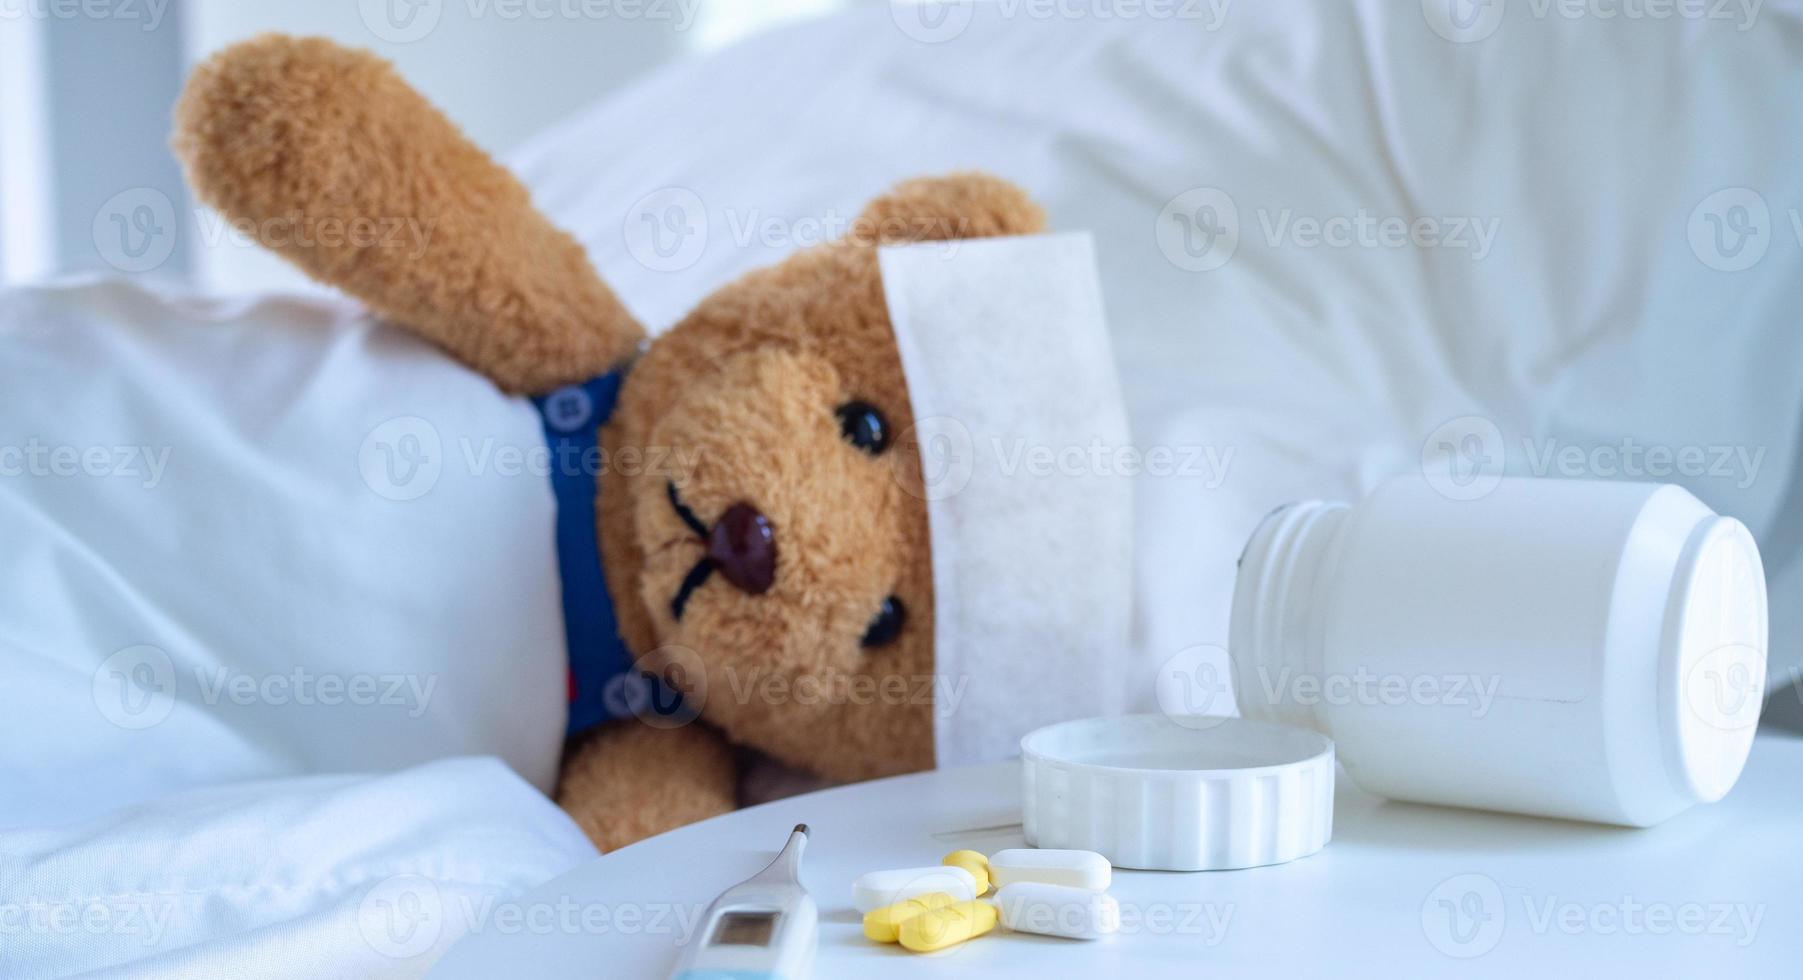 de teddy Björn och de febersänkande lappa lögn på de säng i en vit ton säng Nästa till en medicin tabell och kropp temperatur övervaka. Begagnade för hälsa försäkring eller sjukdom begrepp foto